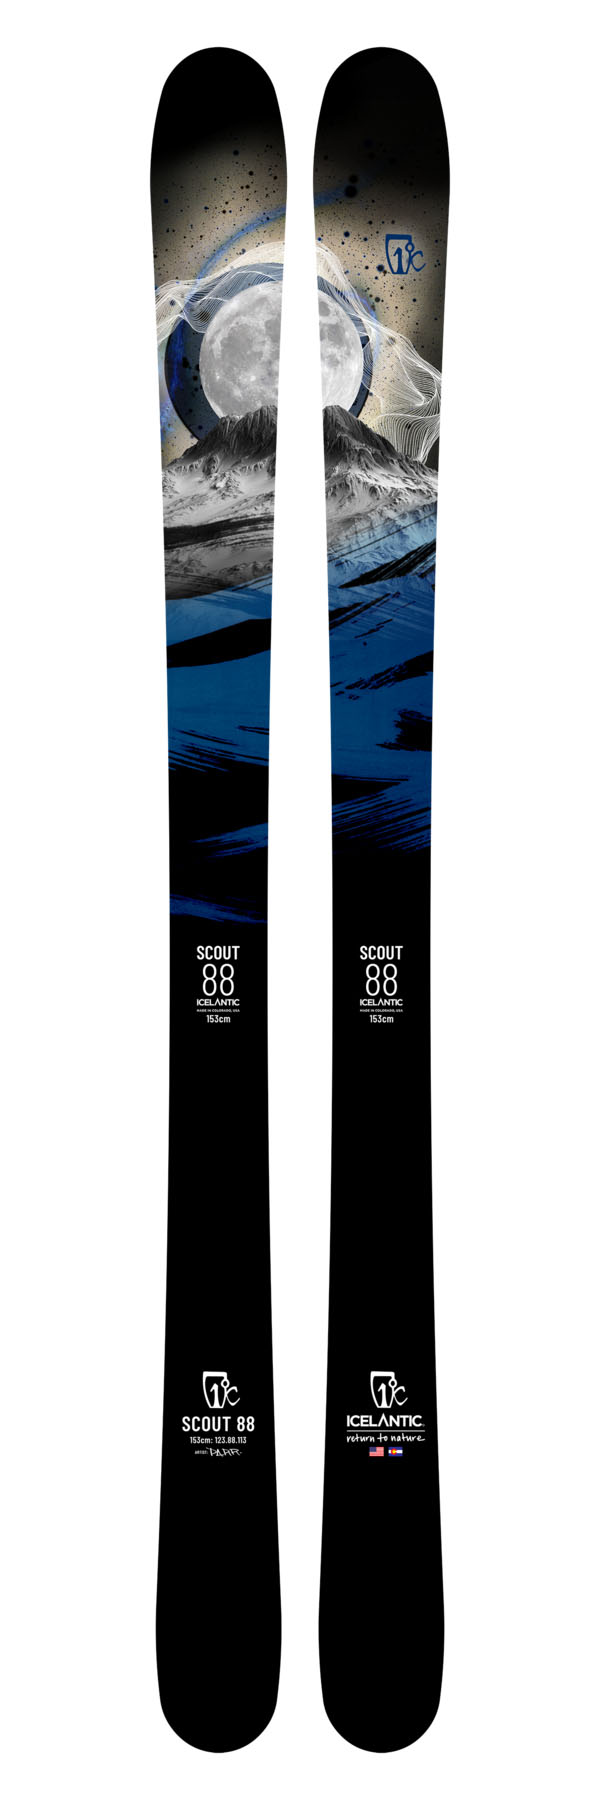 Универсальные лыжи Icelantic Scout 88 2021/2022